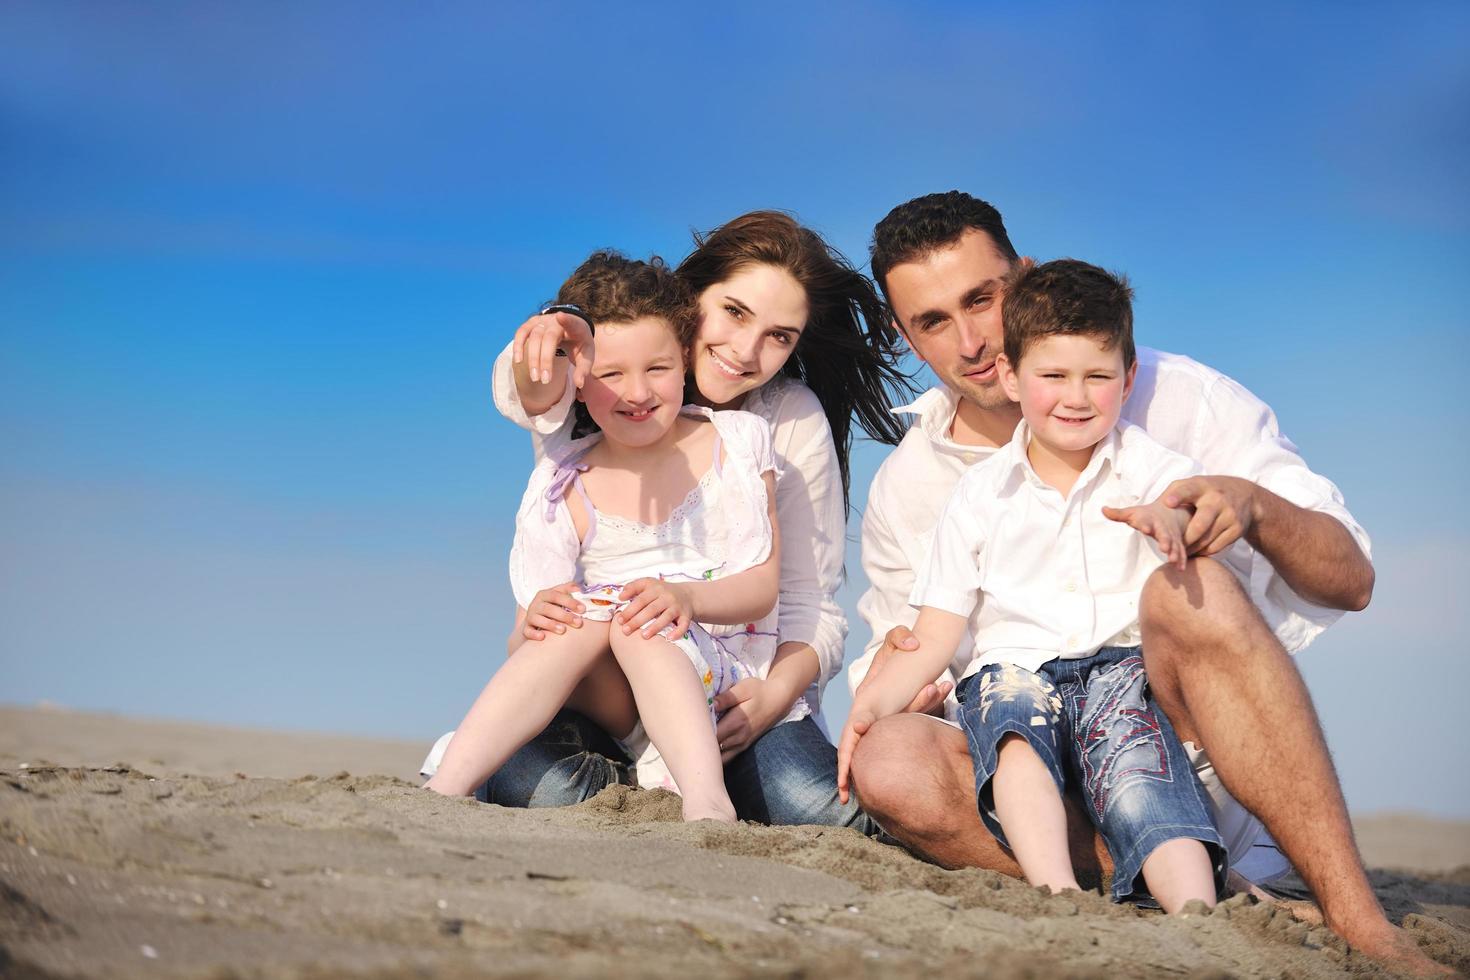 Lycklig ung familj ha roligt på strand foto